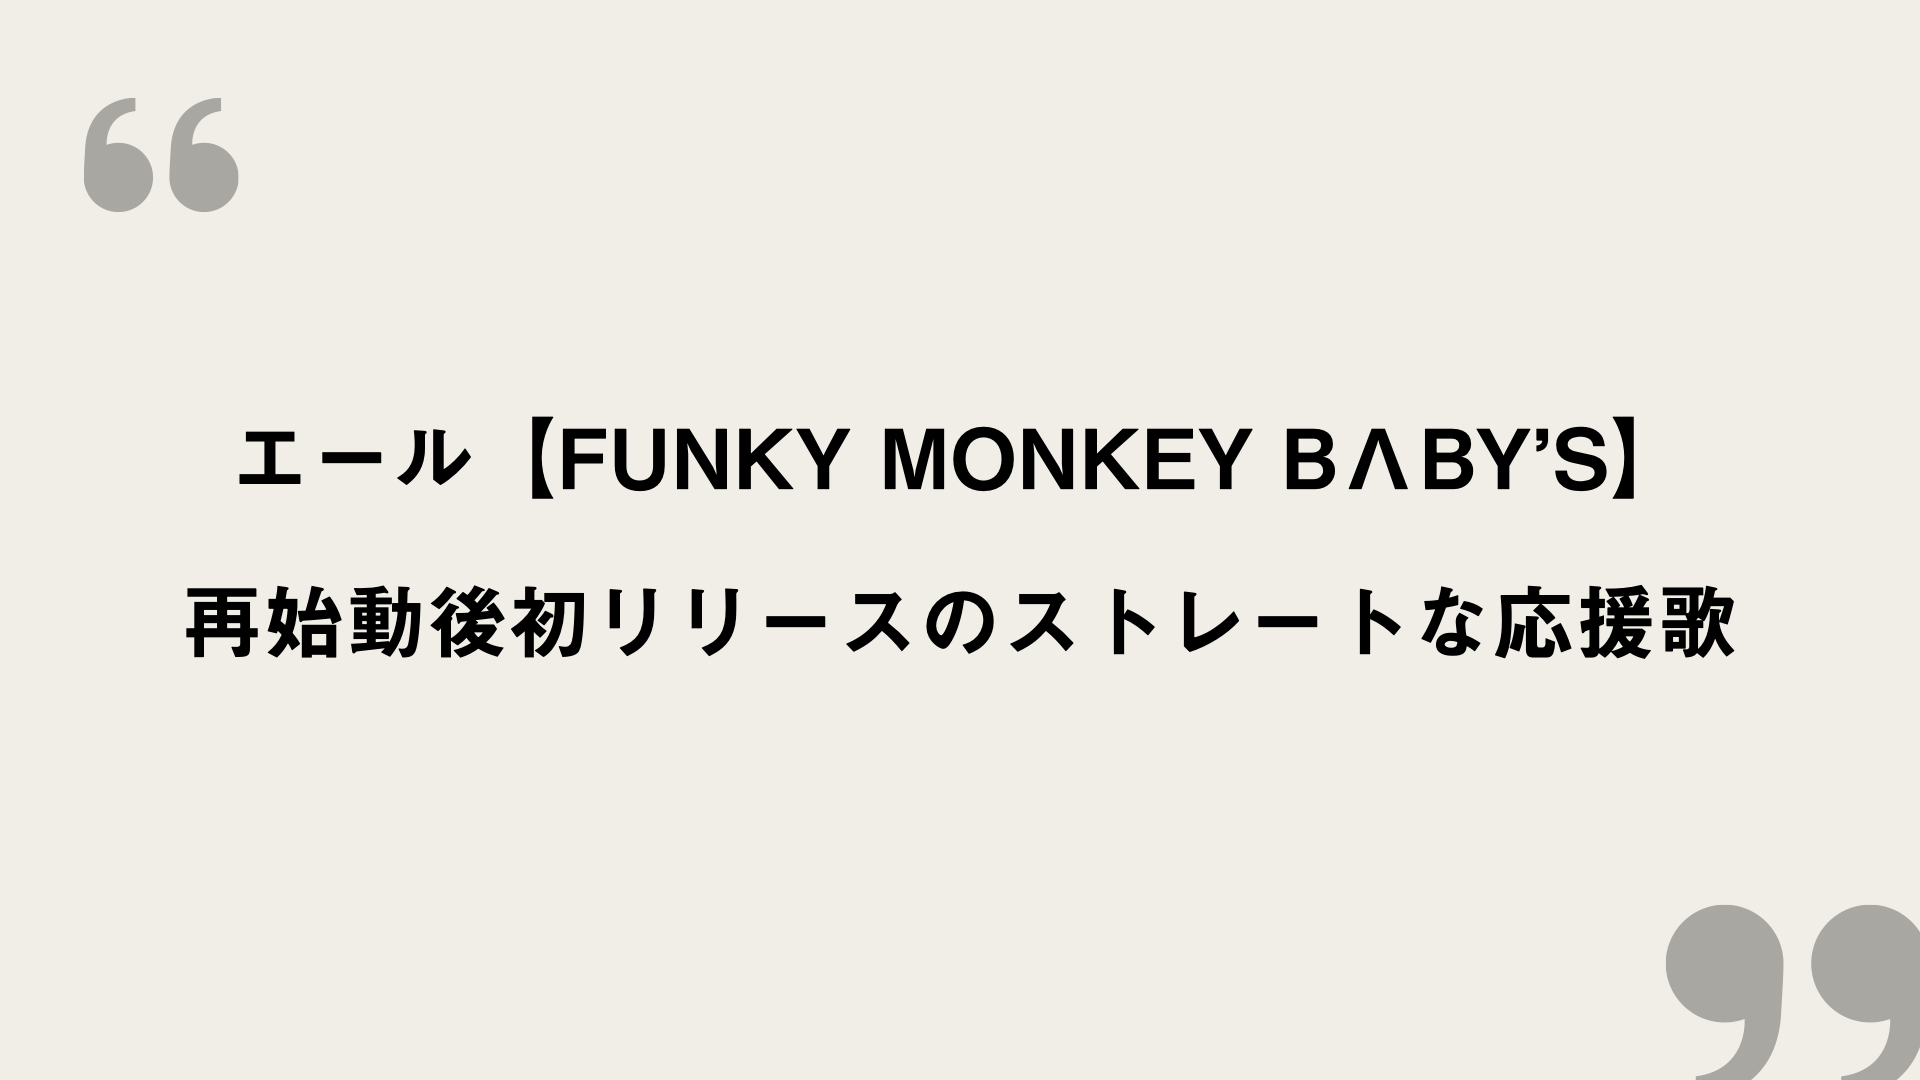 エール Funky Monkey Blby S 歌詞の意味を考察 再始動後初リリースのストレートな応援歌 Framu Media